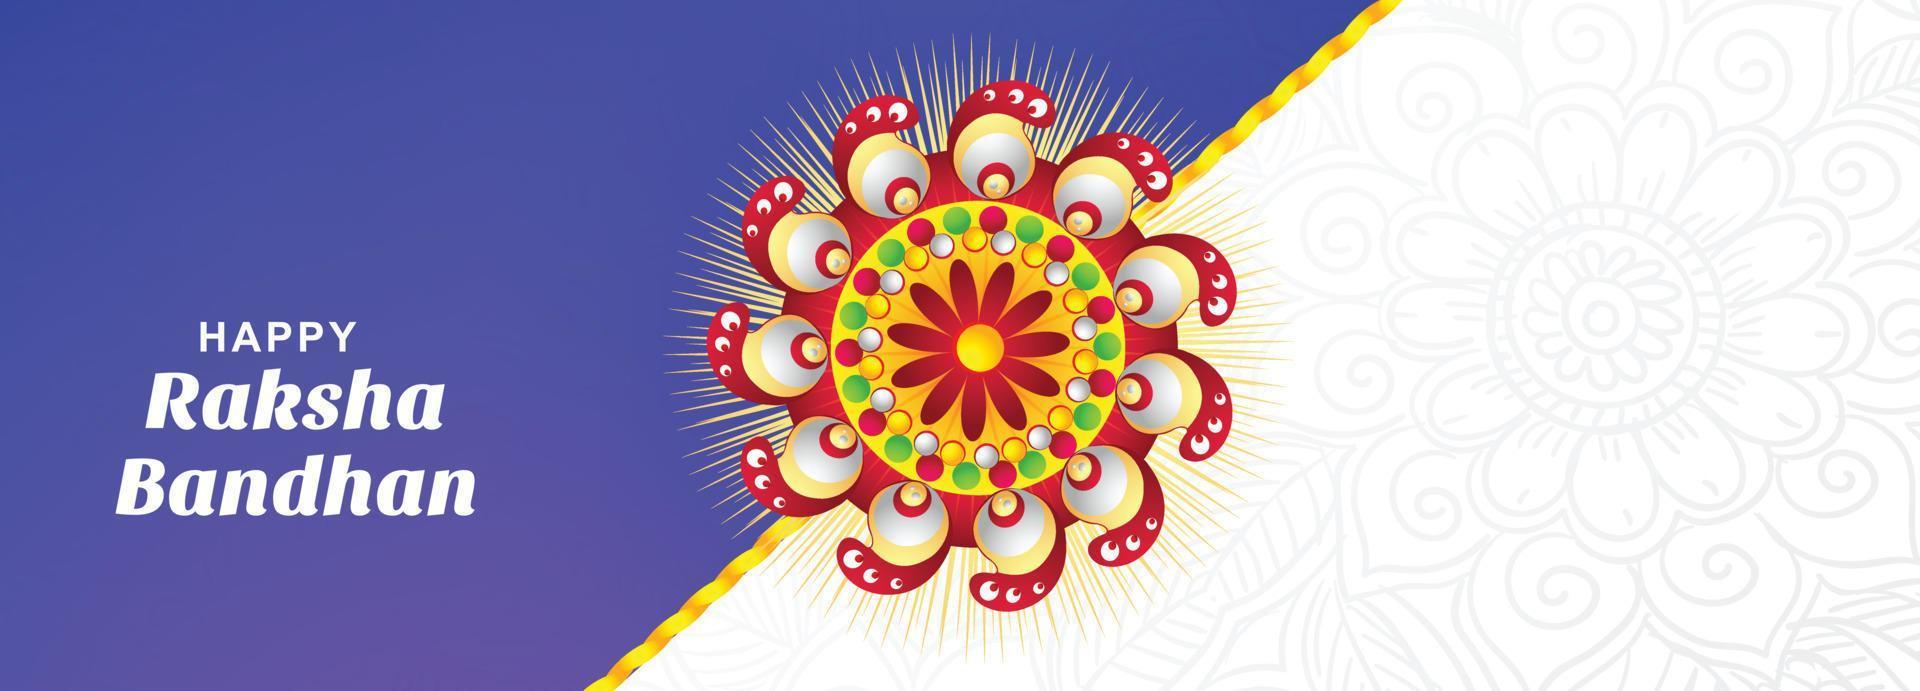 Indian festival raksha bandhan wishes card celebration banner design vector